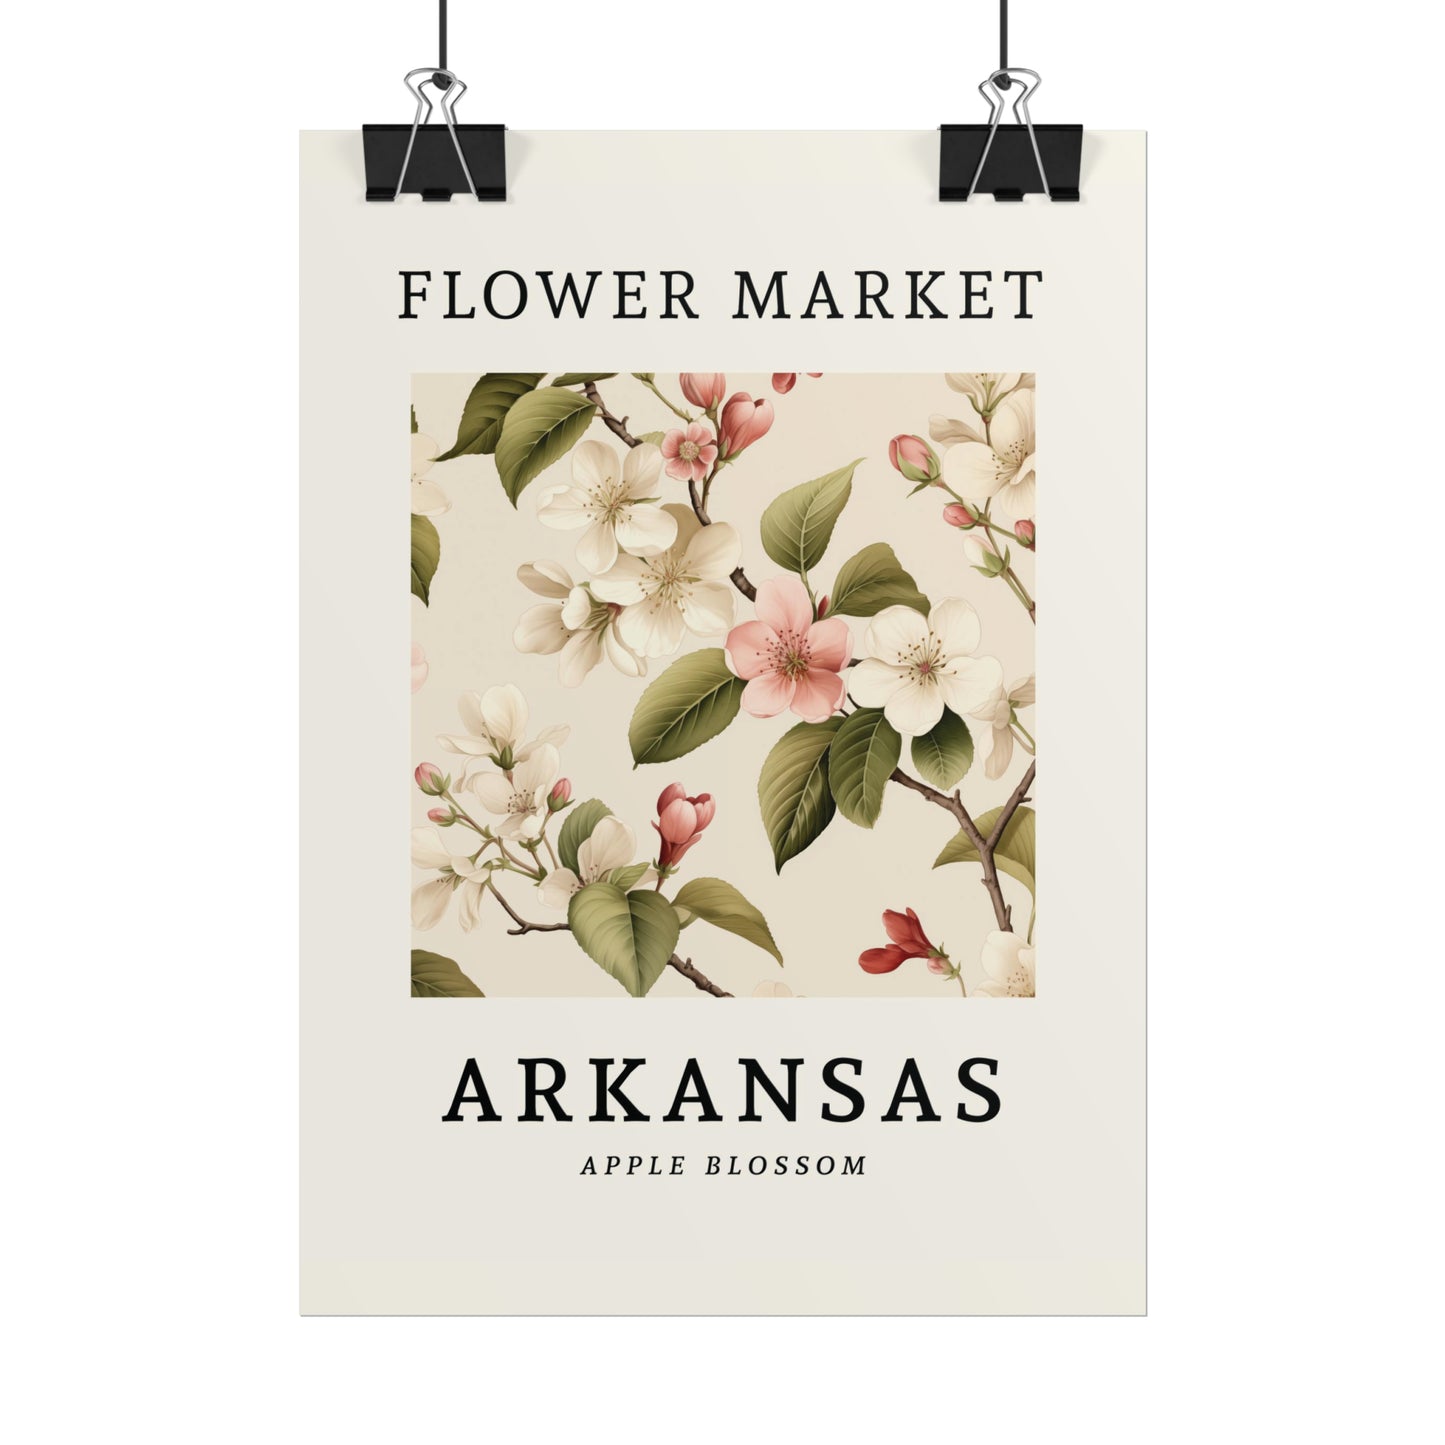 ARKANSAS FLOWER MARKET Poster Apple Blossom Flower Blooms